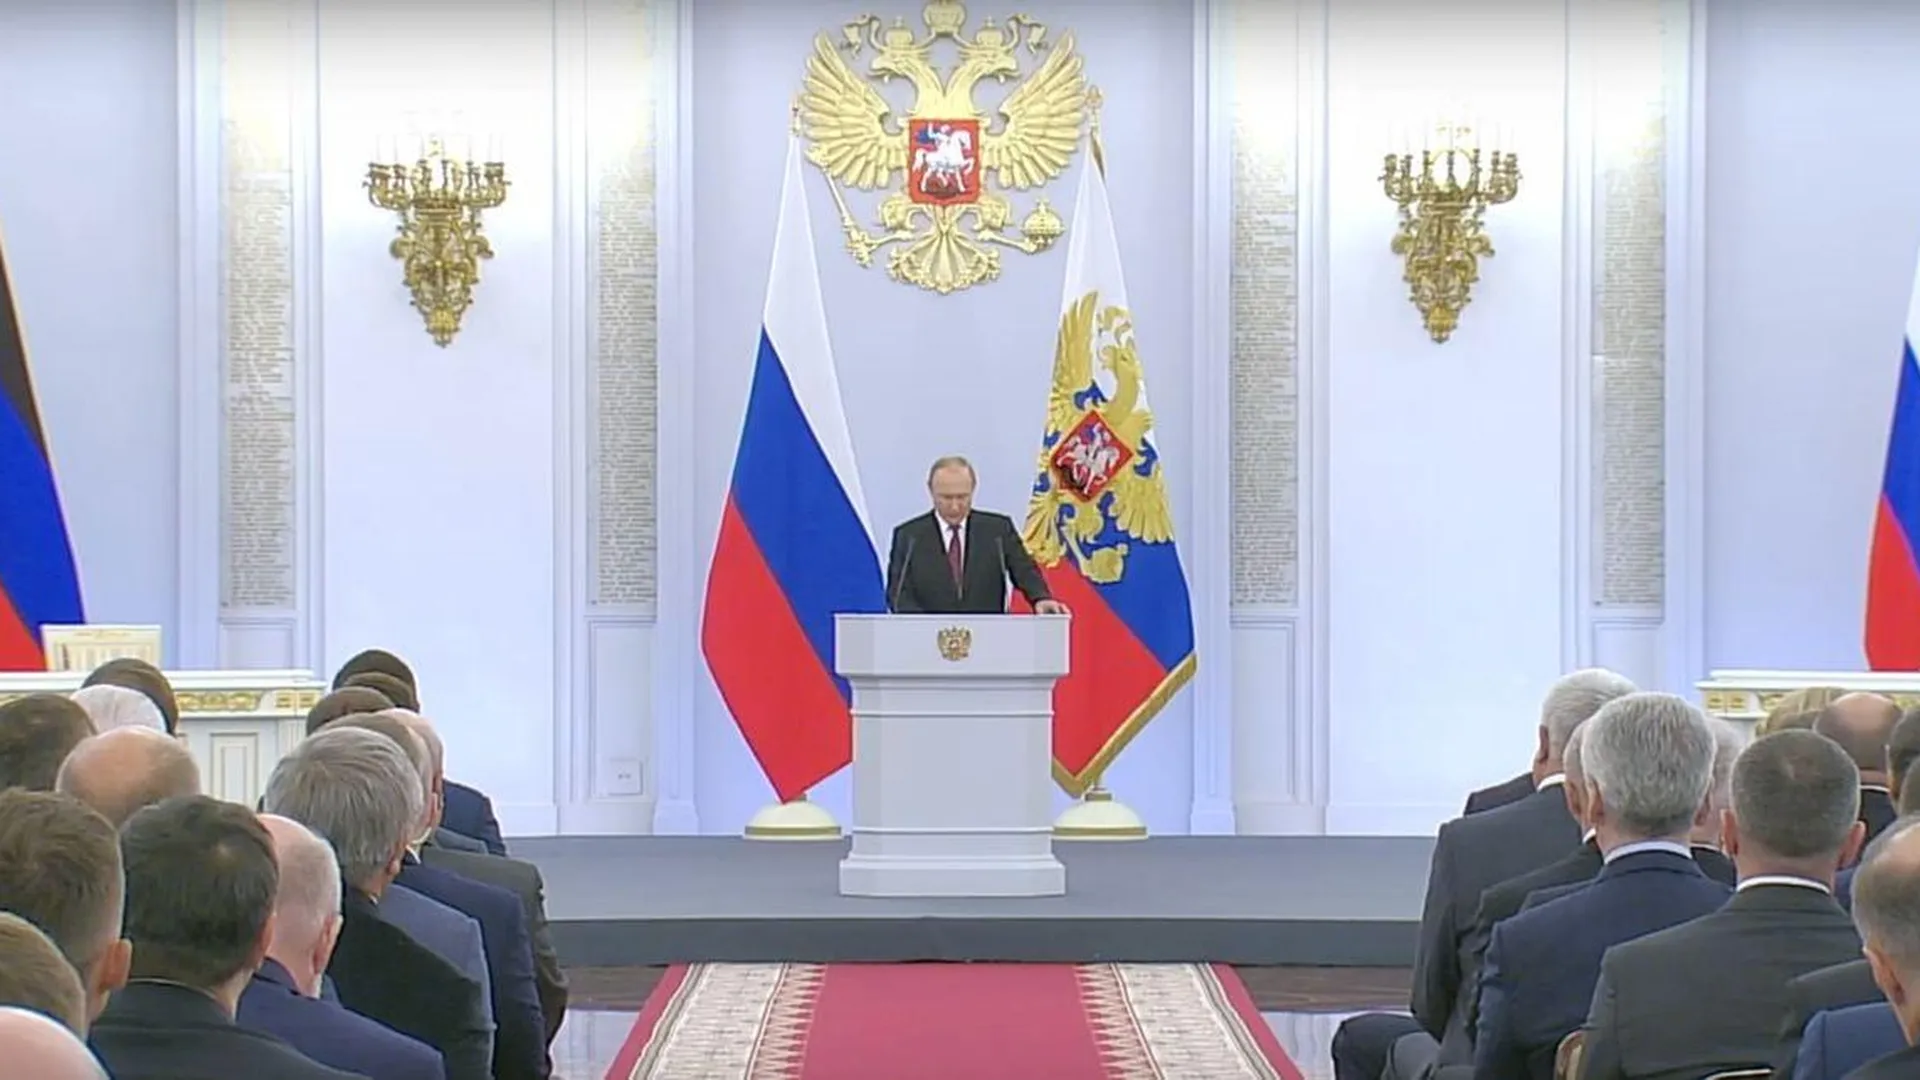 Путин: Граждане новых территорий будут чувствовать поддержку всего народа России